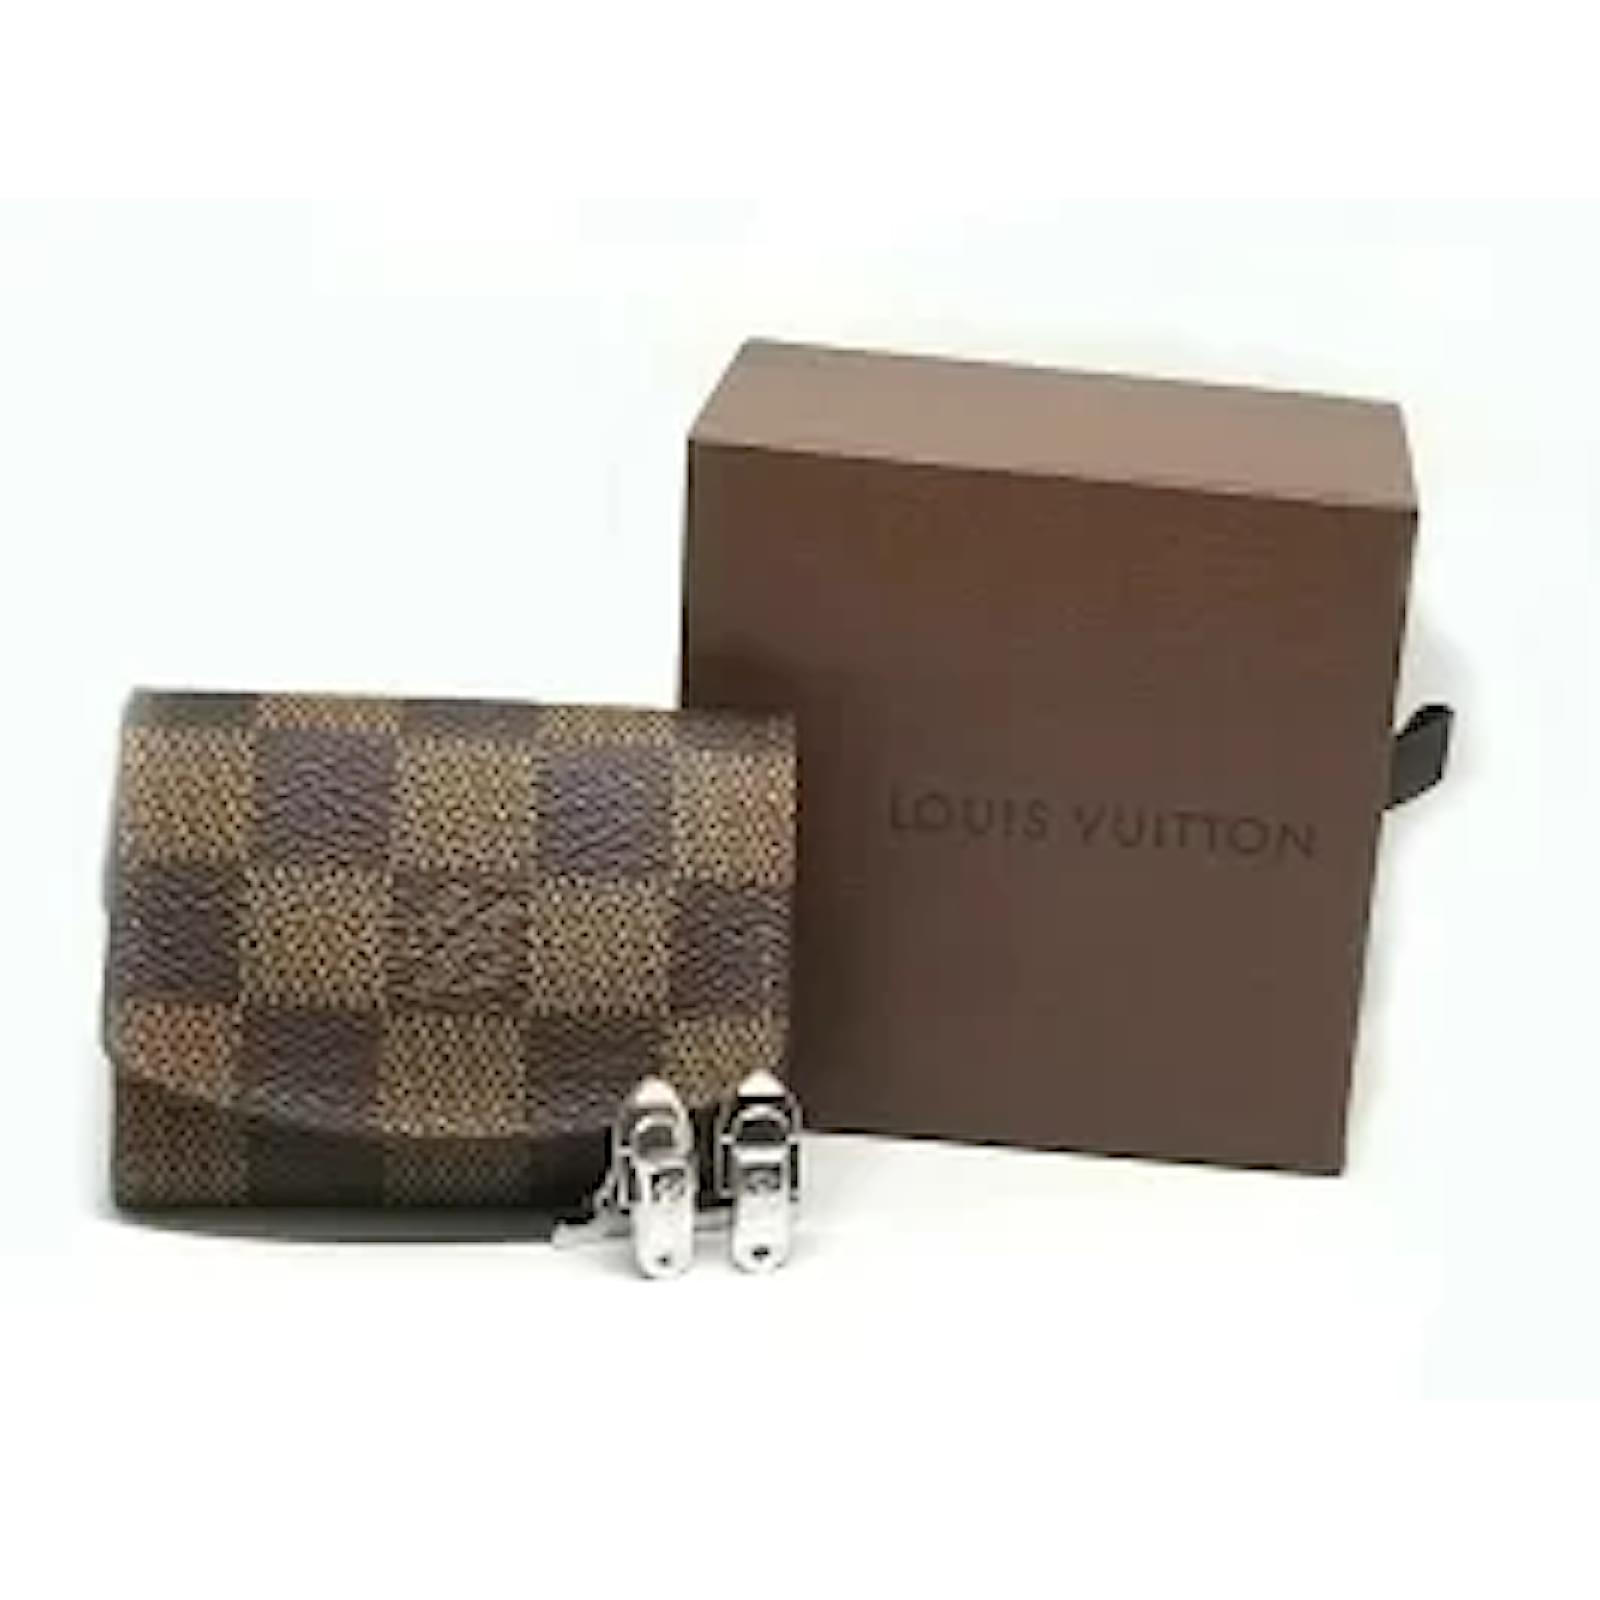 Louis Vuitton Silver Champs Élysées Cufflinks QJMANI2OVB014